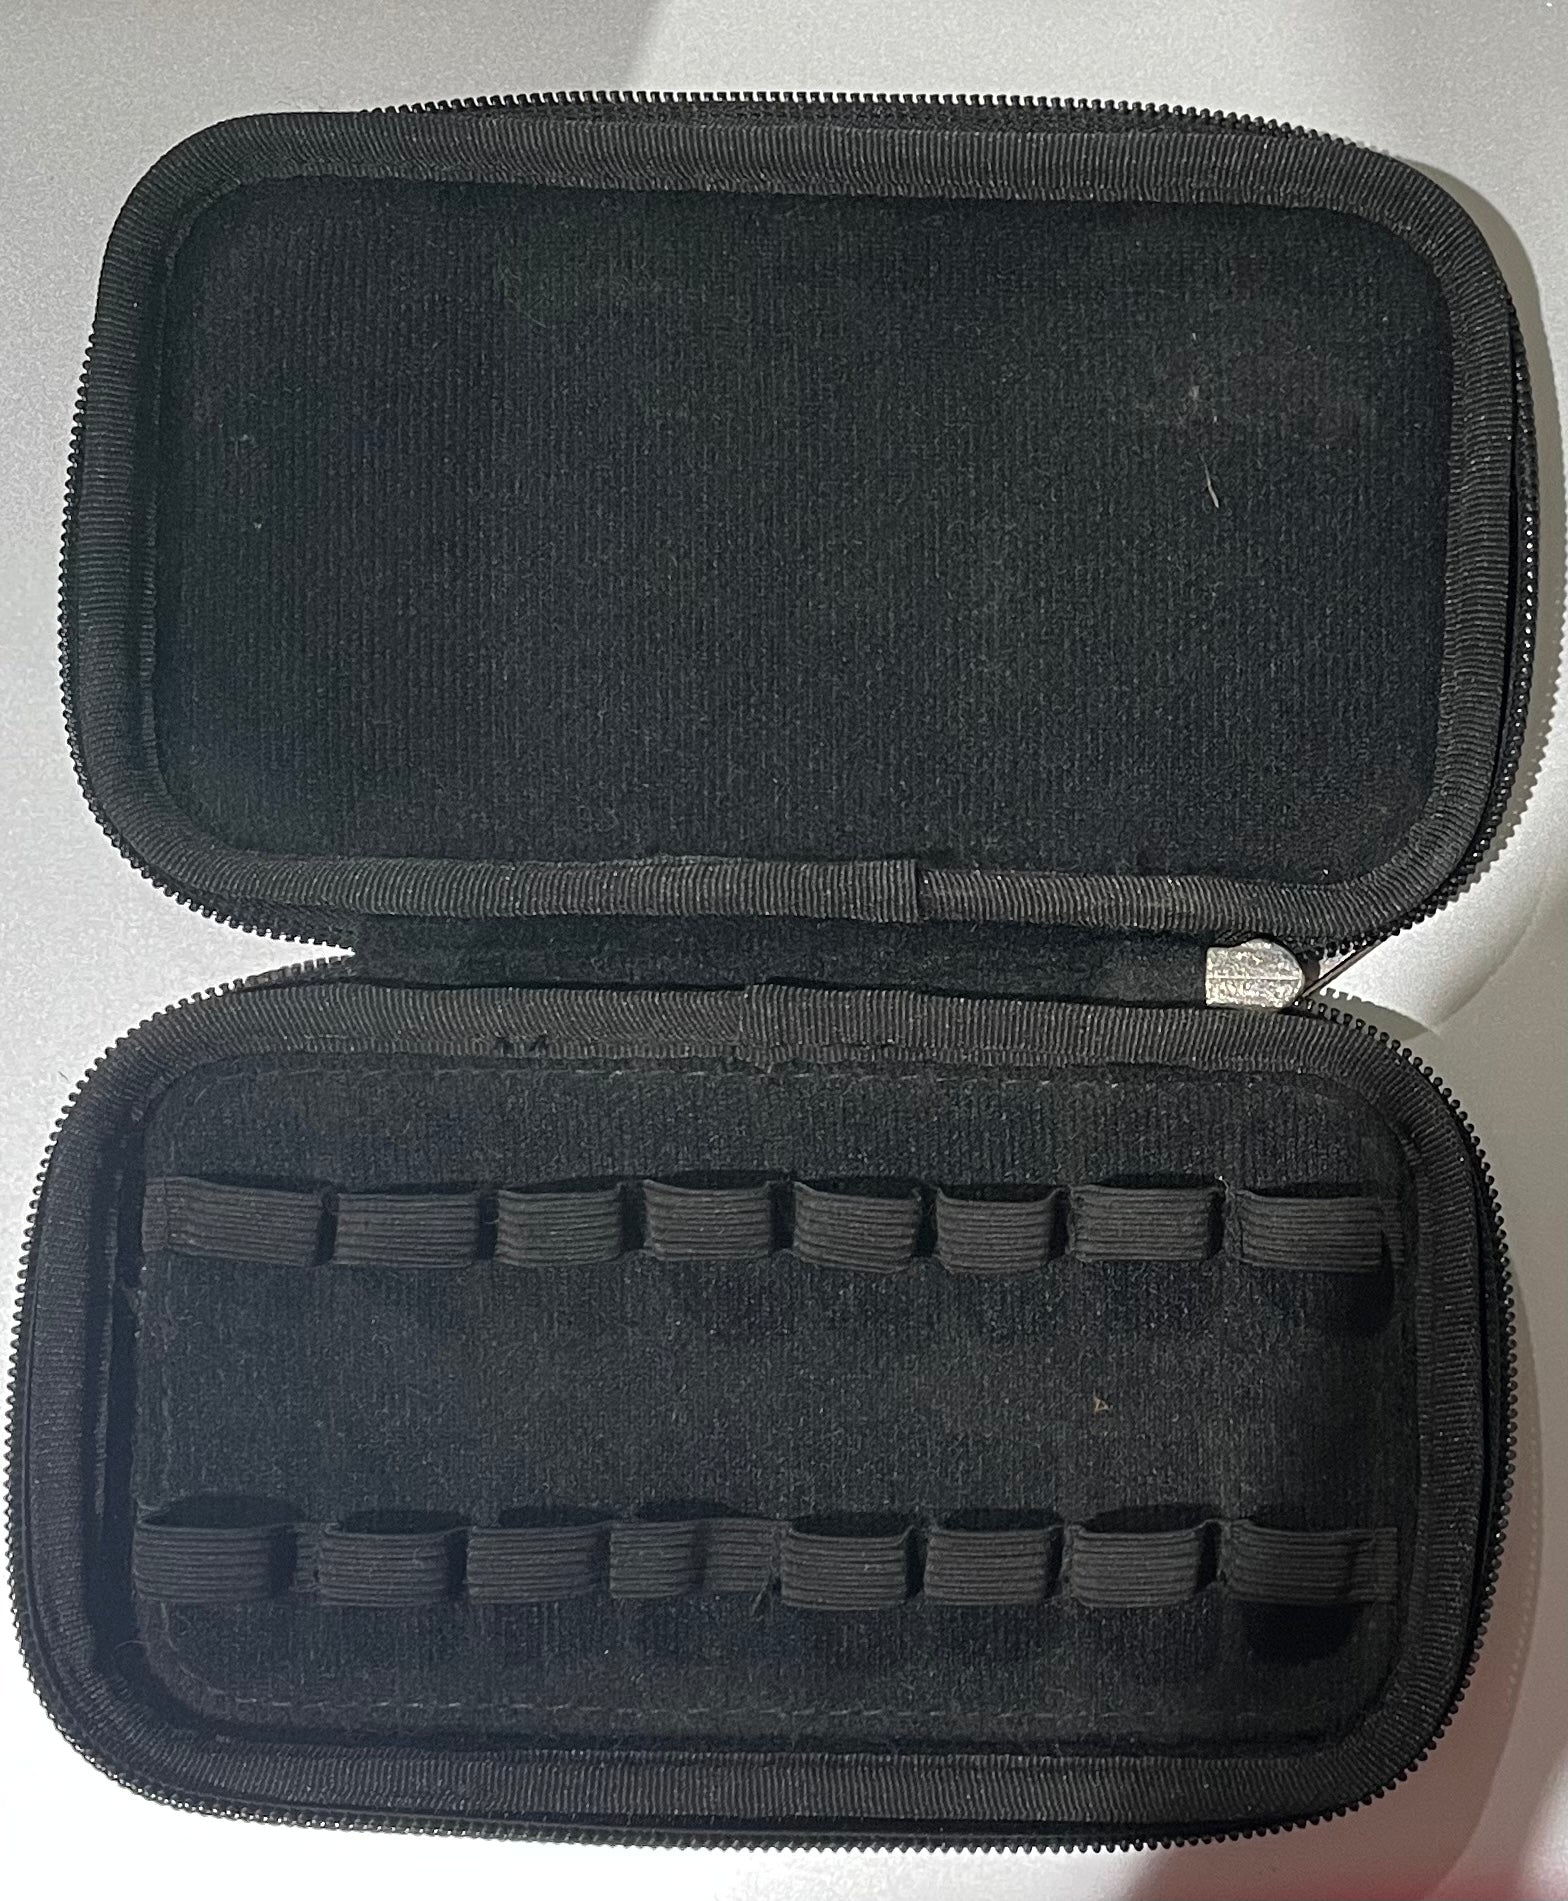 Terpene Case (small)